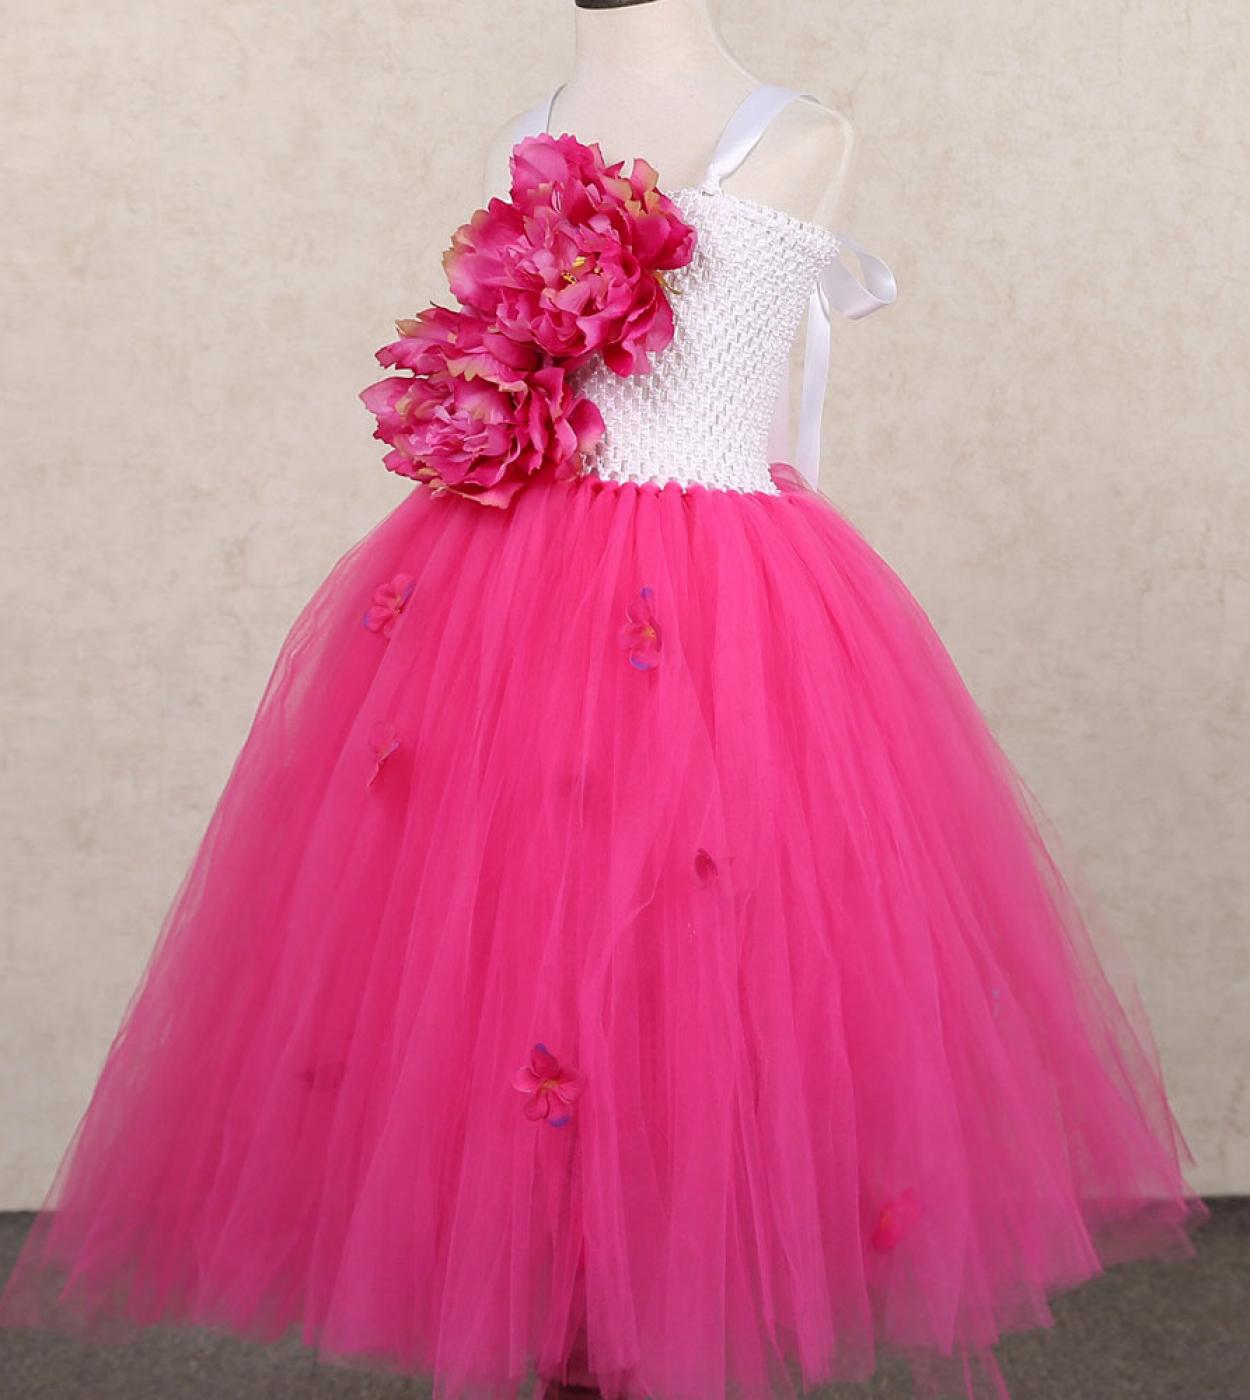 אדמונית פרח ילדה שמלות למסיבת חתונה בנות שושבינה שמלת נשף ילדים תחפושות טוטו נסיכה פיות שמלה ארוכה מלאה